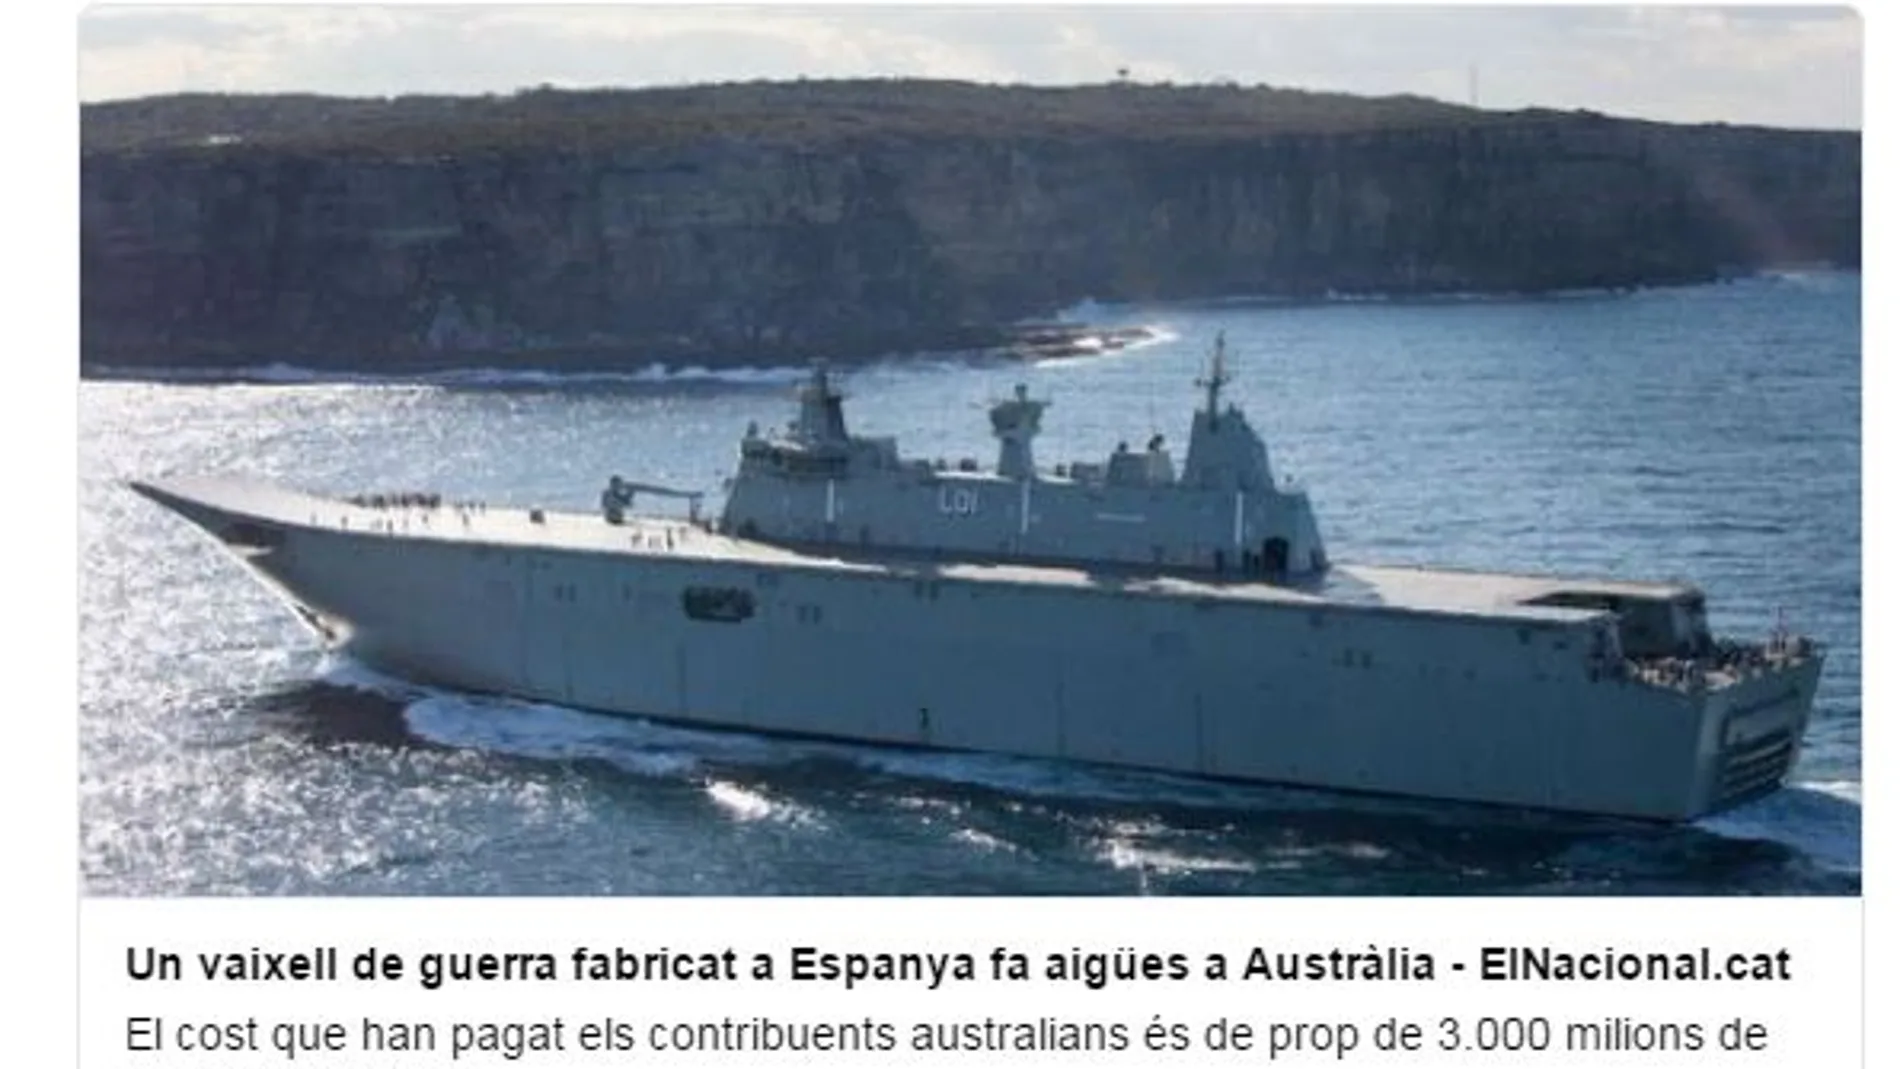 Puigdemont se mofa en Twitter de los problemas de un buque de guerra australiano fabricado por la española Navantia